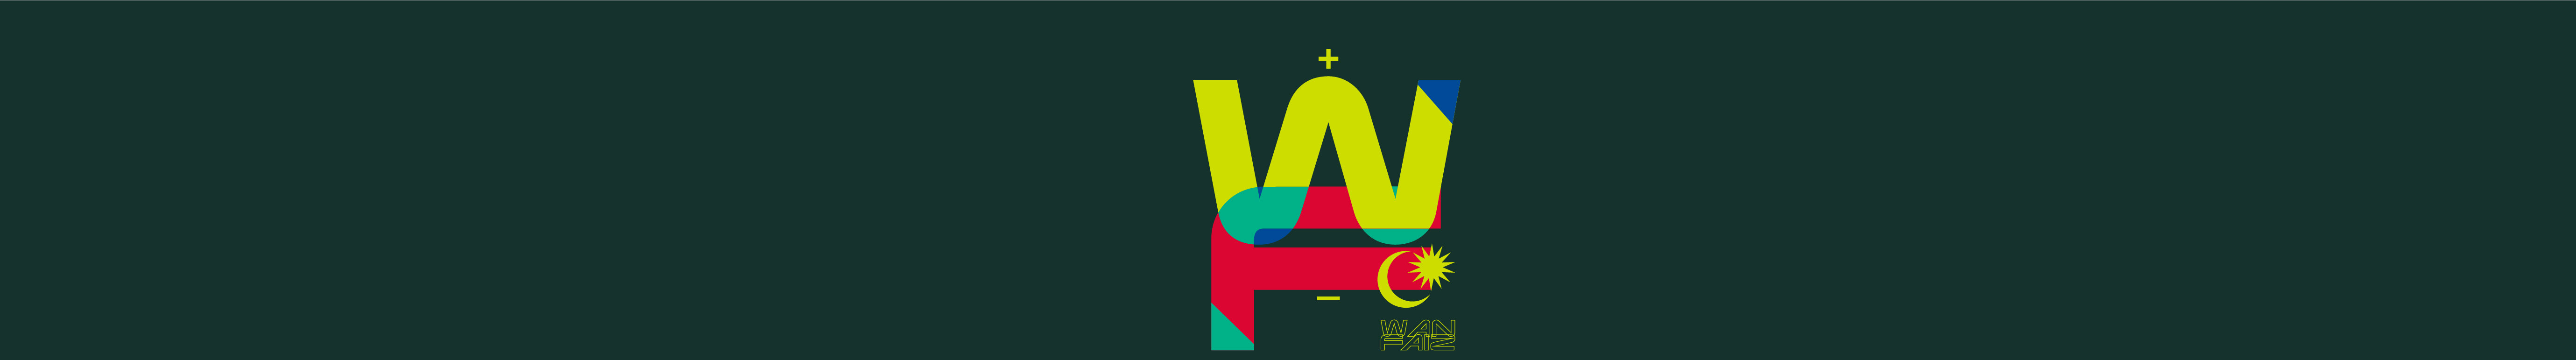 Wan Muhammad Faiz's profile banner